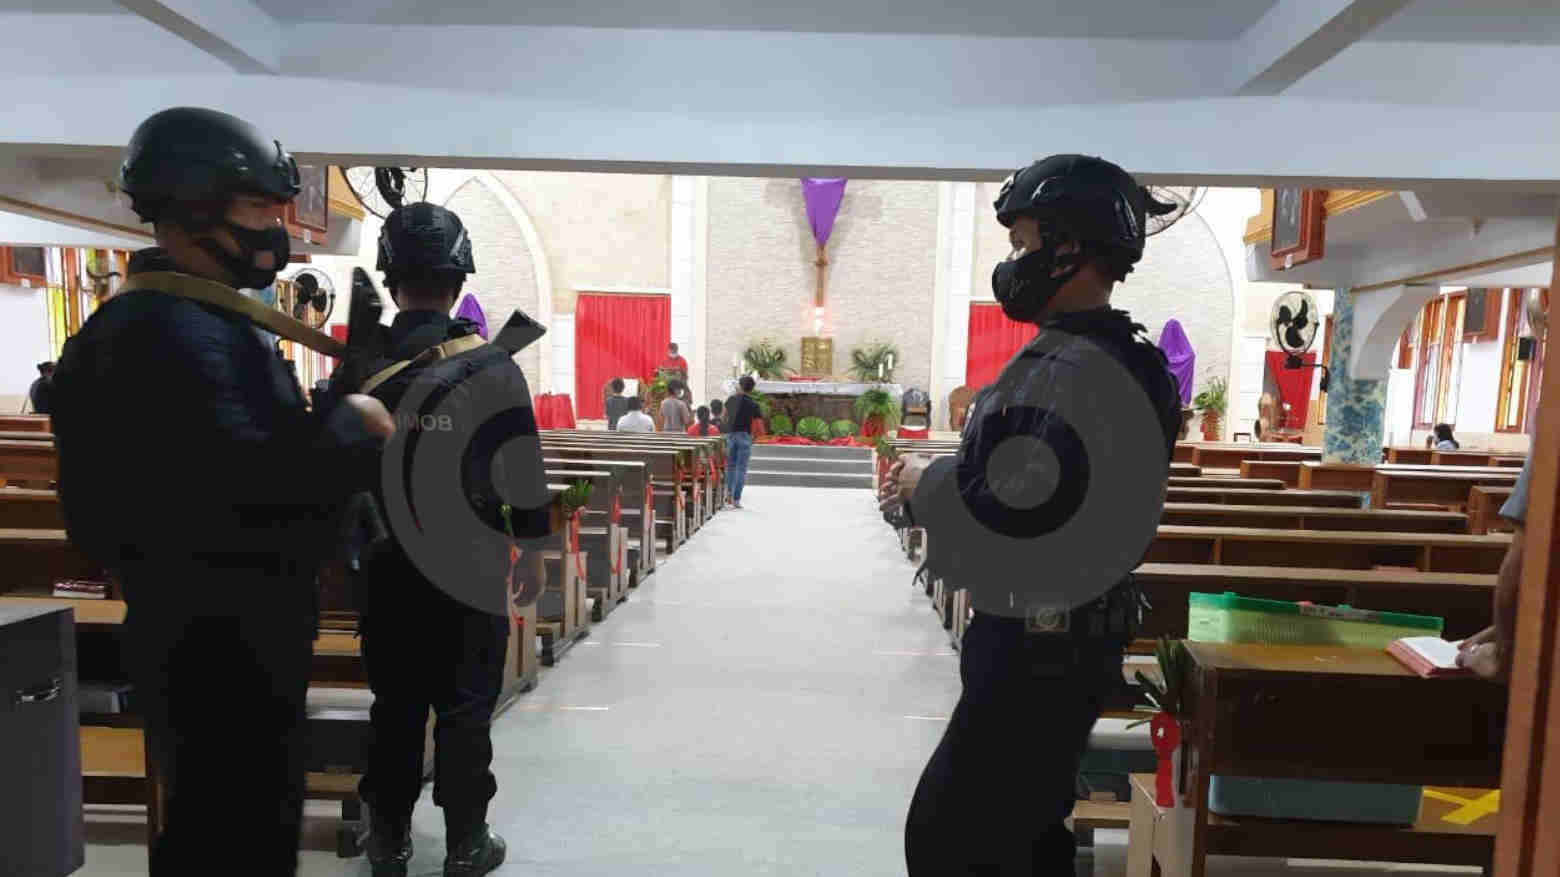 Pasca Bom Makassar, Brimobda Sultra Perketat Pengamanan di Tempat Ibadah